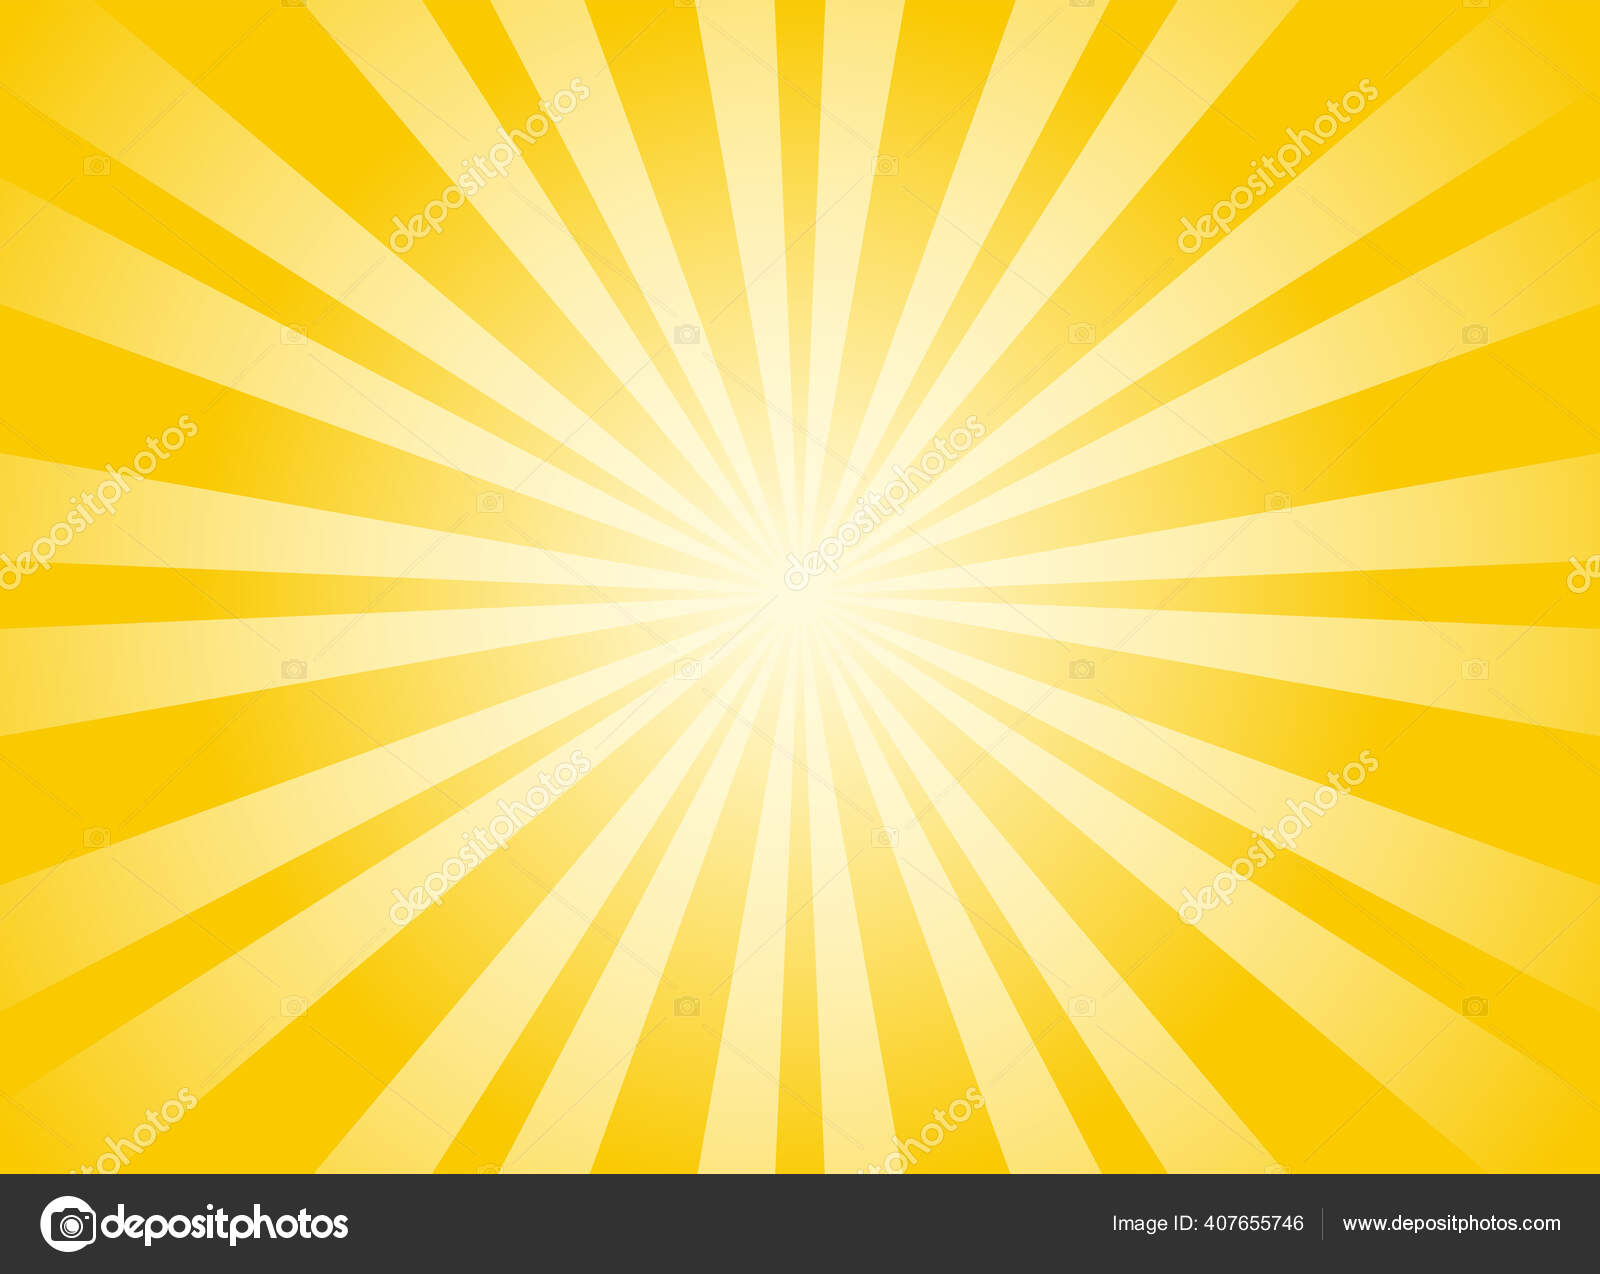 Hình nền ngang tia nắng sáng màu cam - Hình nền ngang đầy sức cuốn hút với những tia nắng sáng màu cam rực rỡ. Sự tỏa sáng và rực rỡ giữa không gian xanh tươi tạo nên một hình nền đầy năng lượng, giúp bạn tỉnh táo, sảng khoái và hạnh phúc.